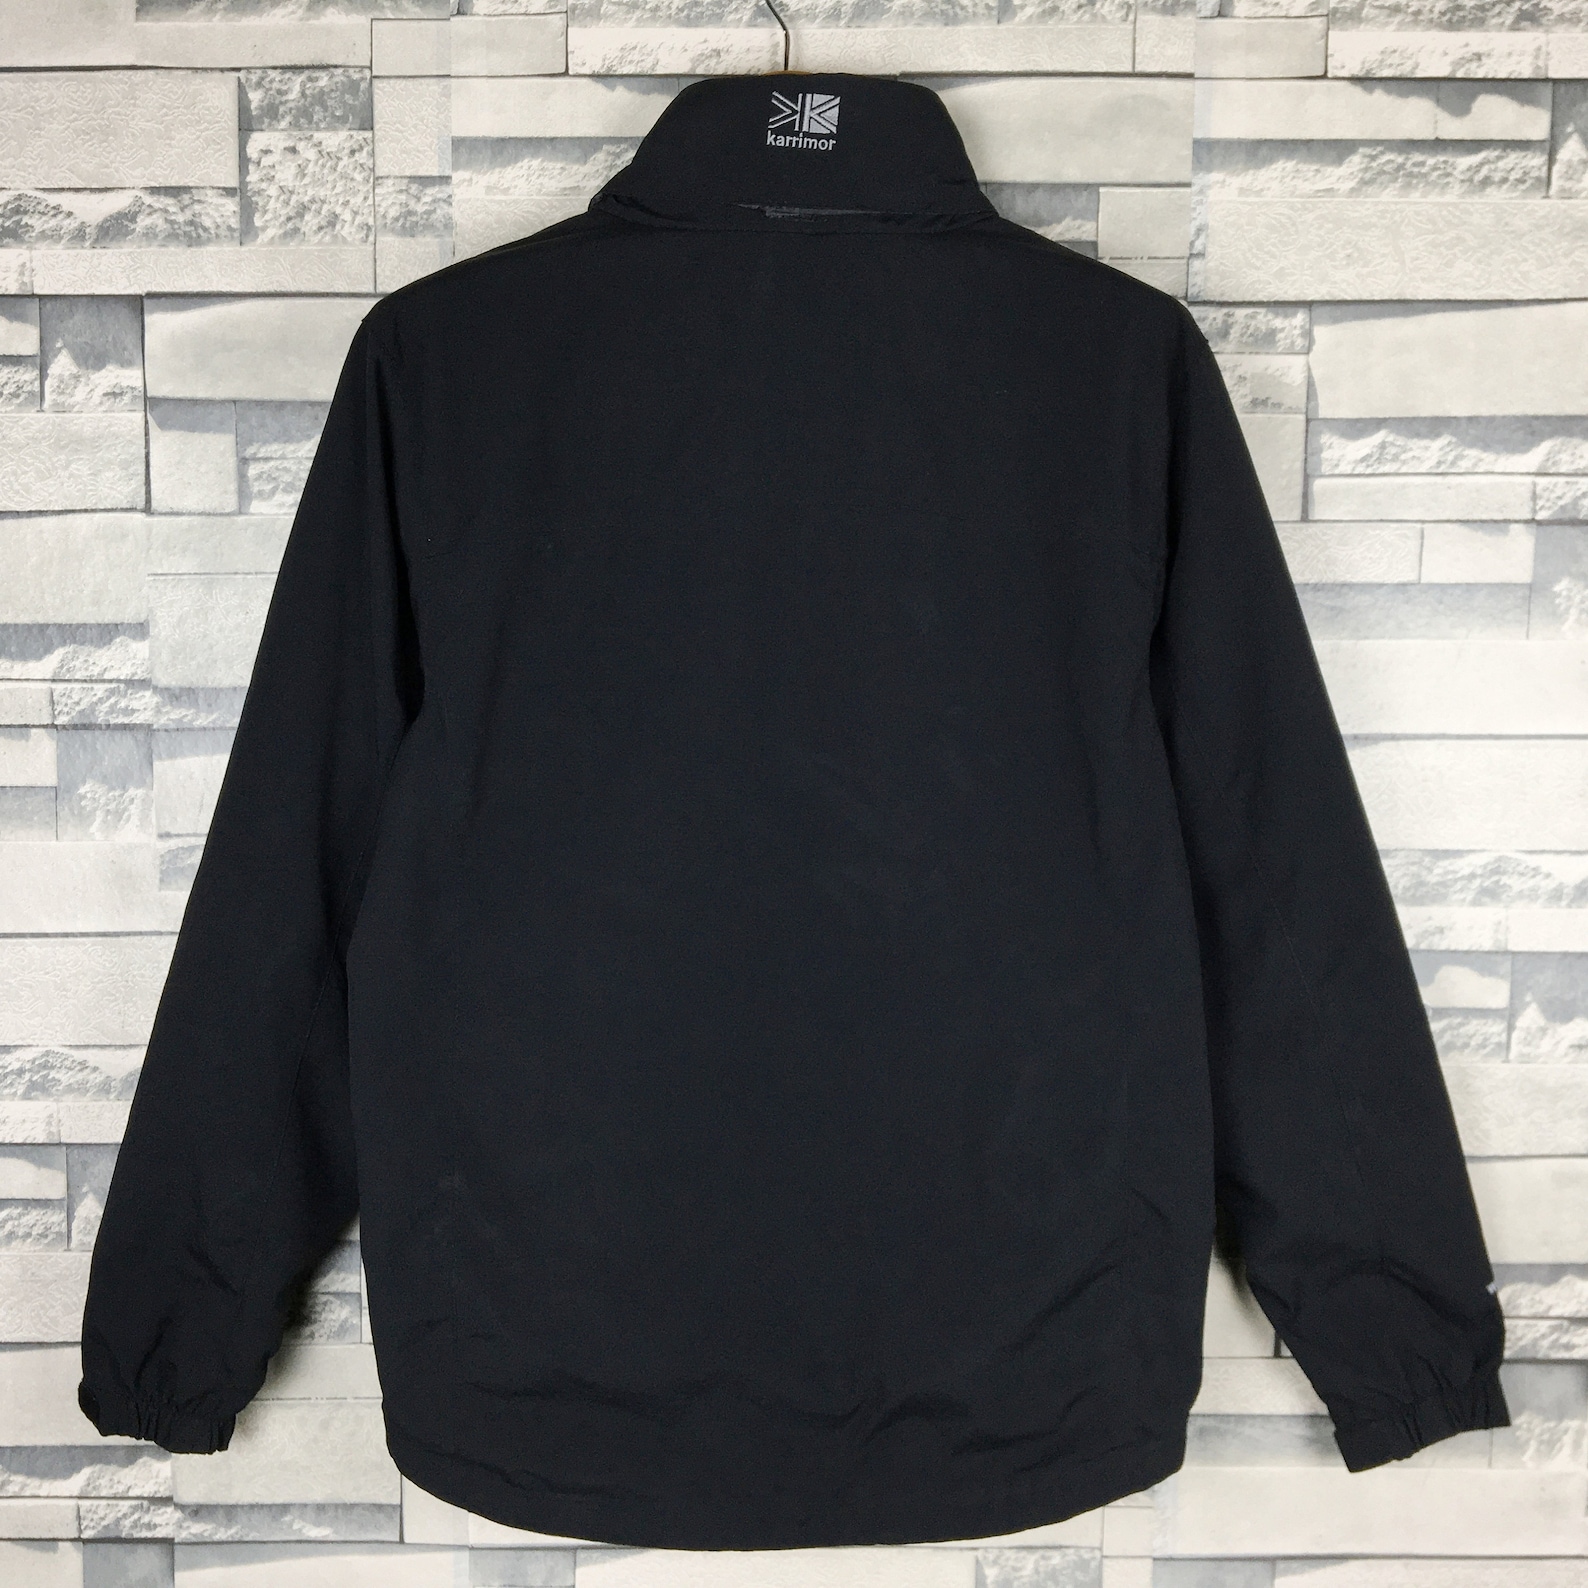 KARRIMOR Jacket Small Vintage Karrimor Sportswear Black Hoodie | Etsy